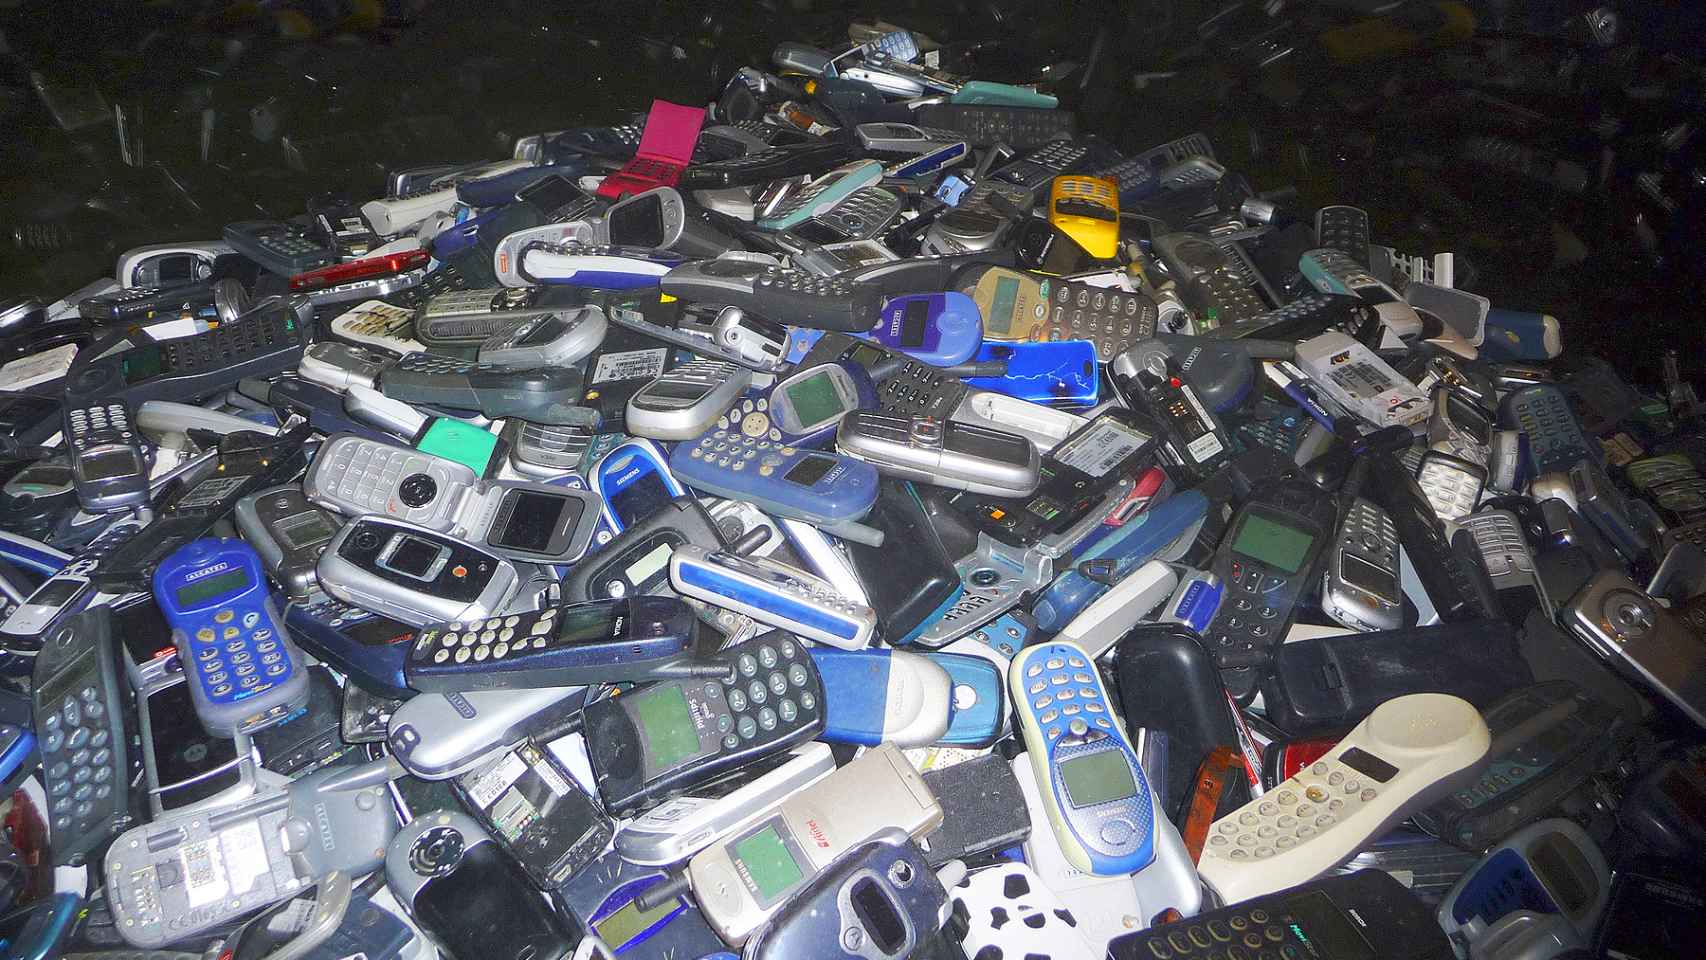 Montaña de viejos móviles, resultado de la obsolescencia programada. Foto: Adolfo Plasencia.